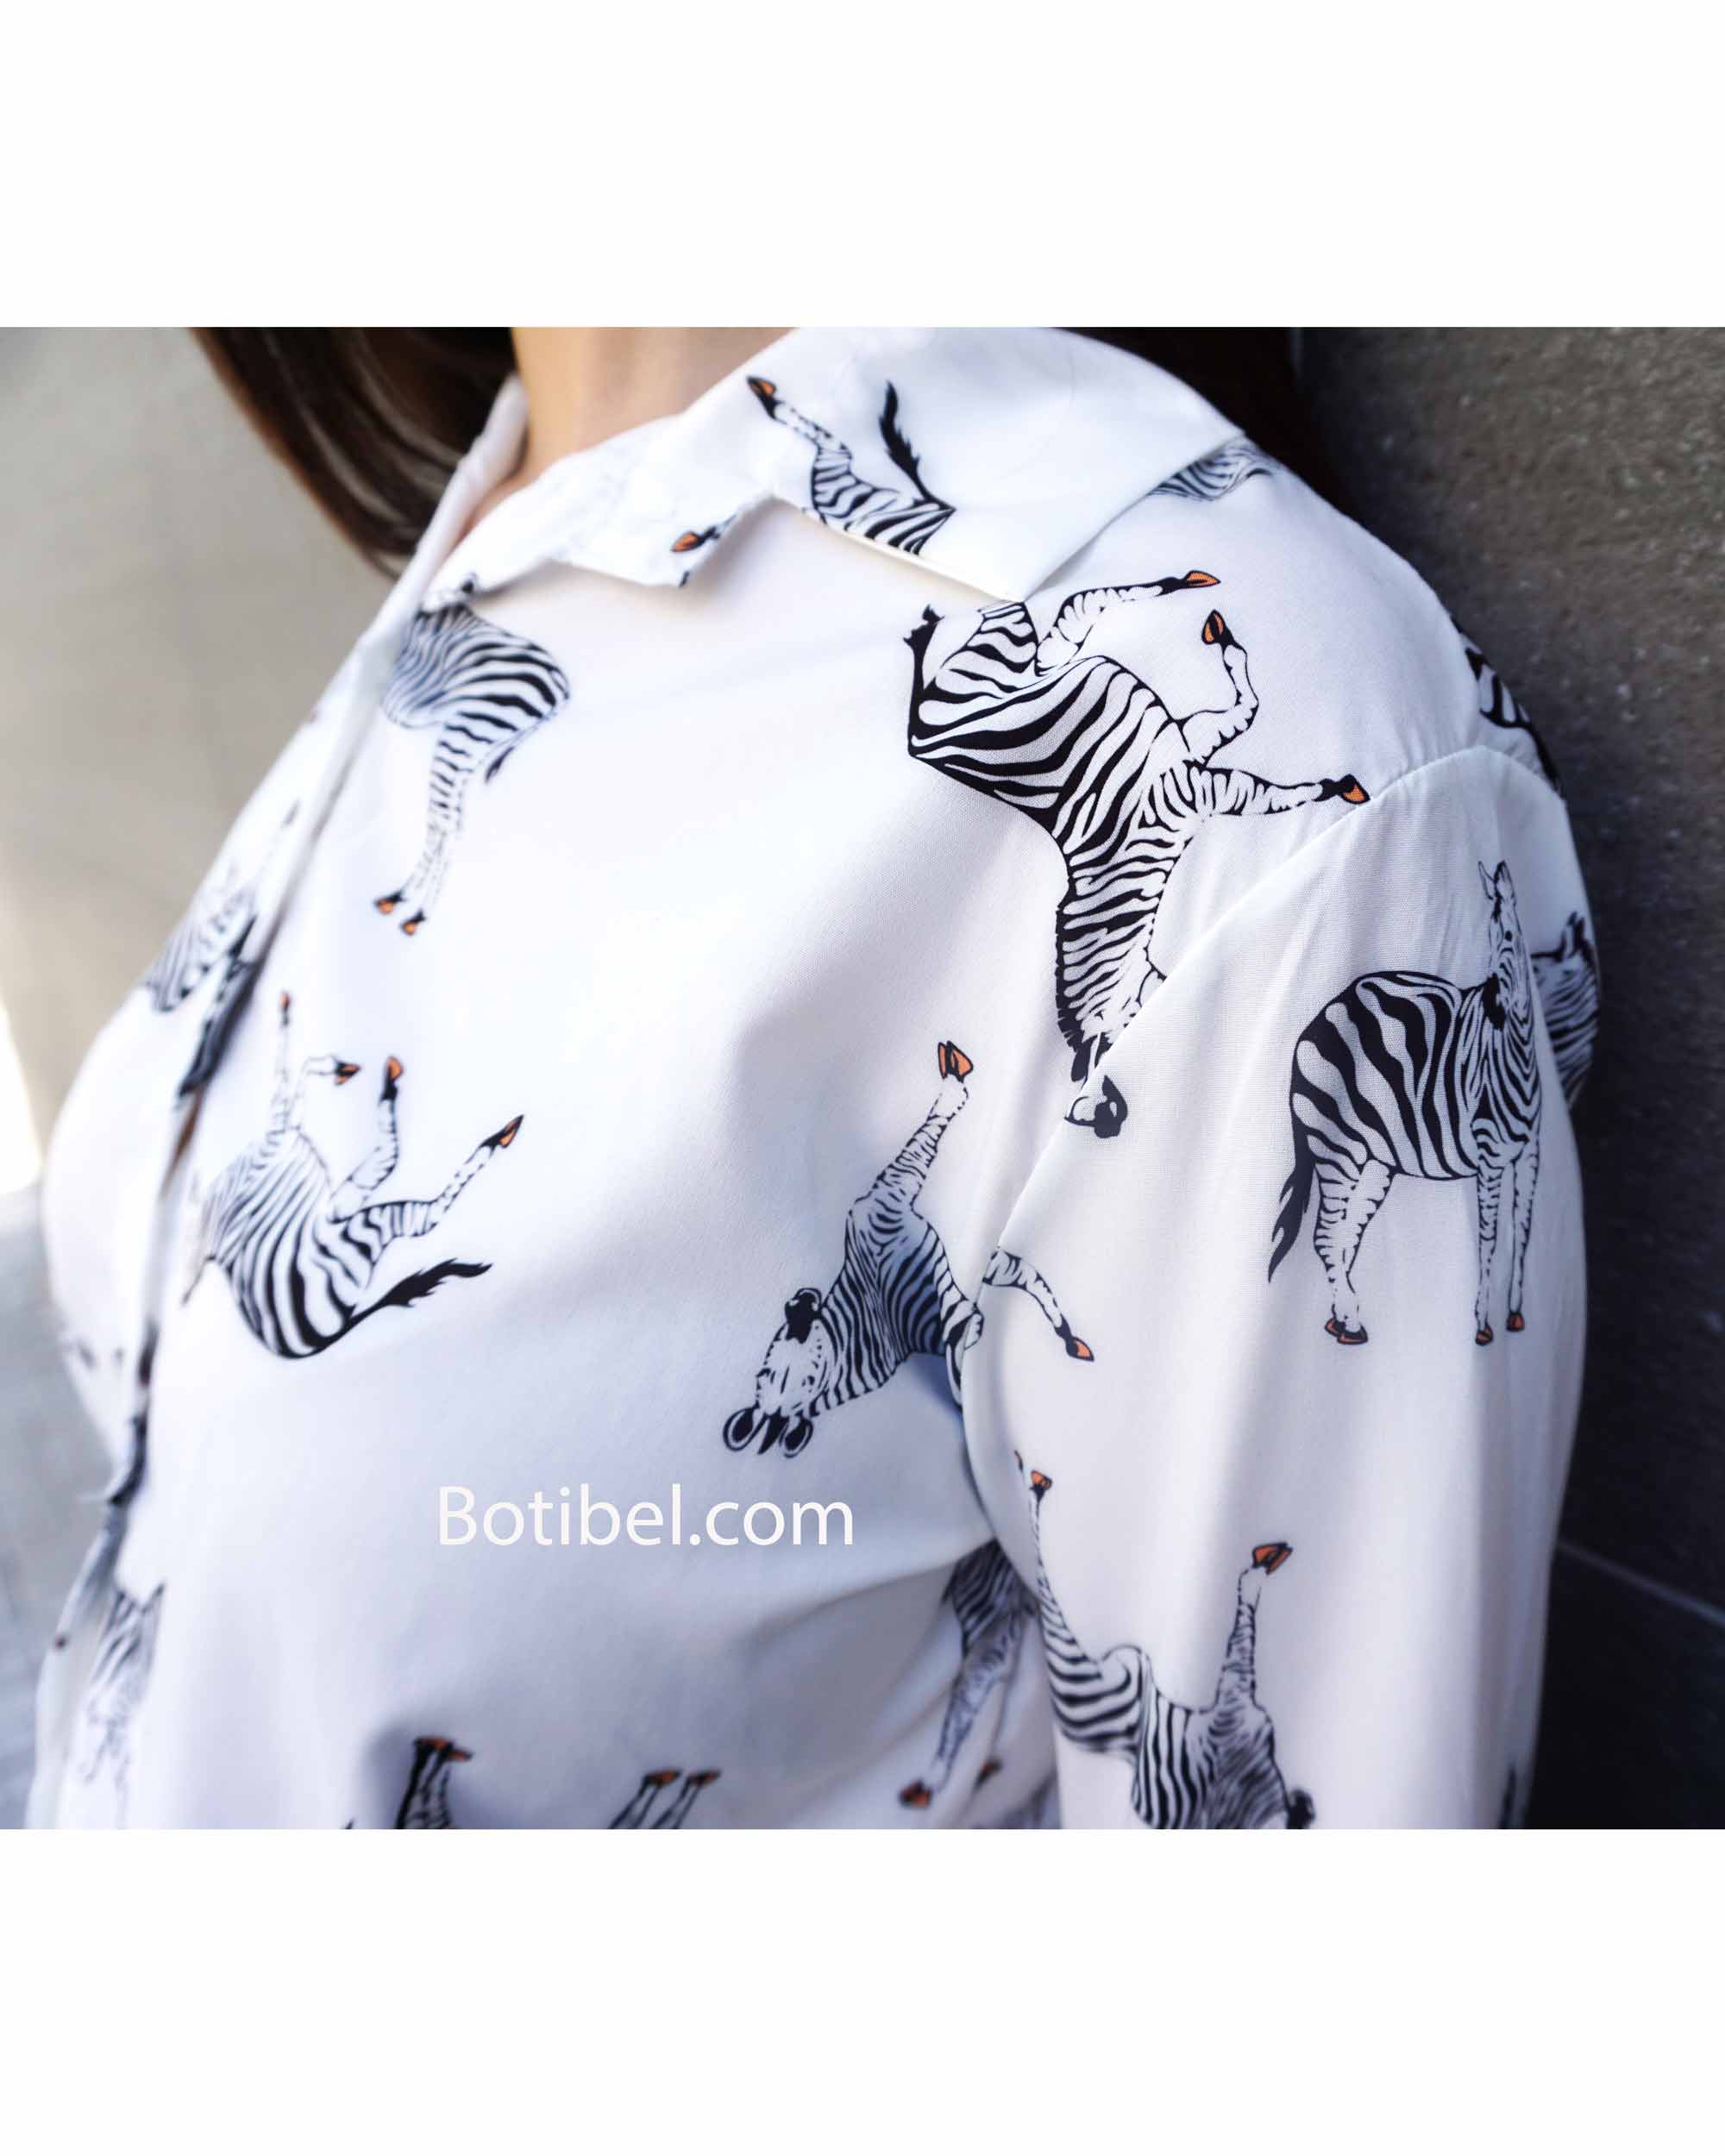 camisa-cebra-blanca-abotonada-manga-larga-zara Botibel.com